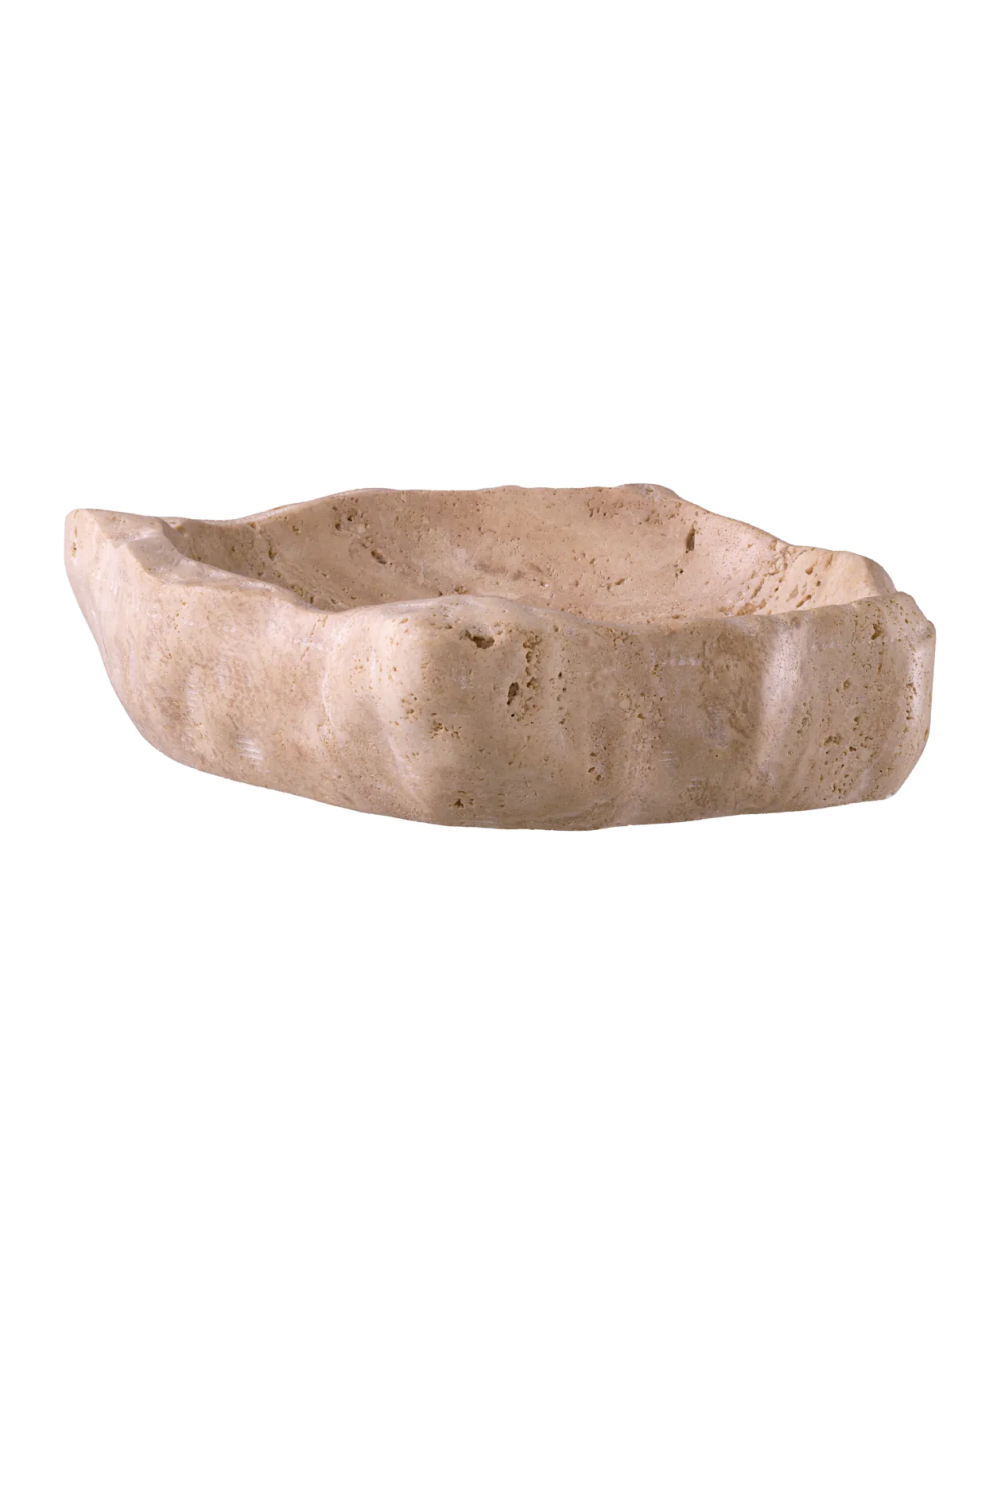 Carved Travertine Bowl | Eichholtz Callas | Oroa.com